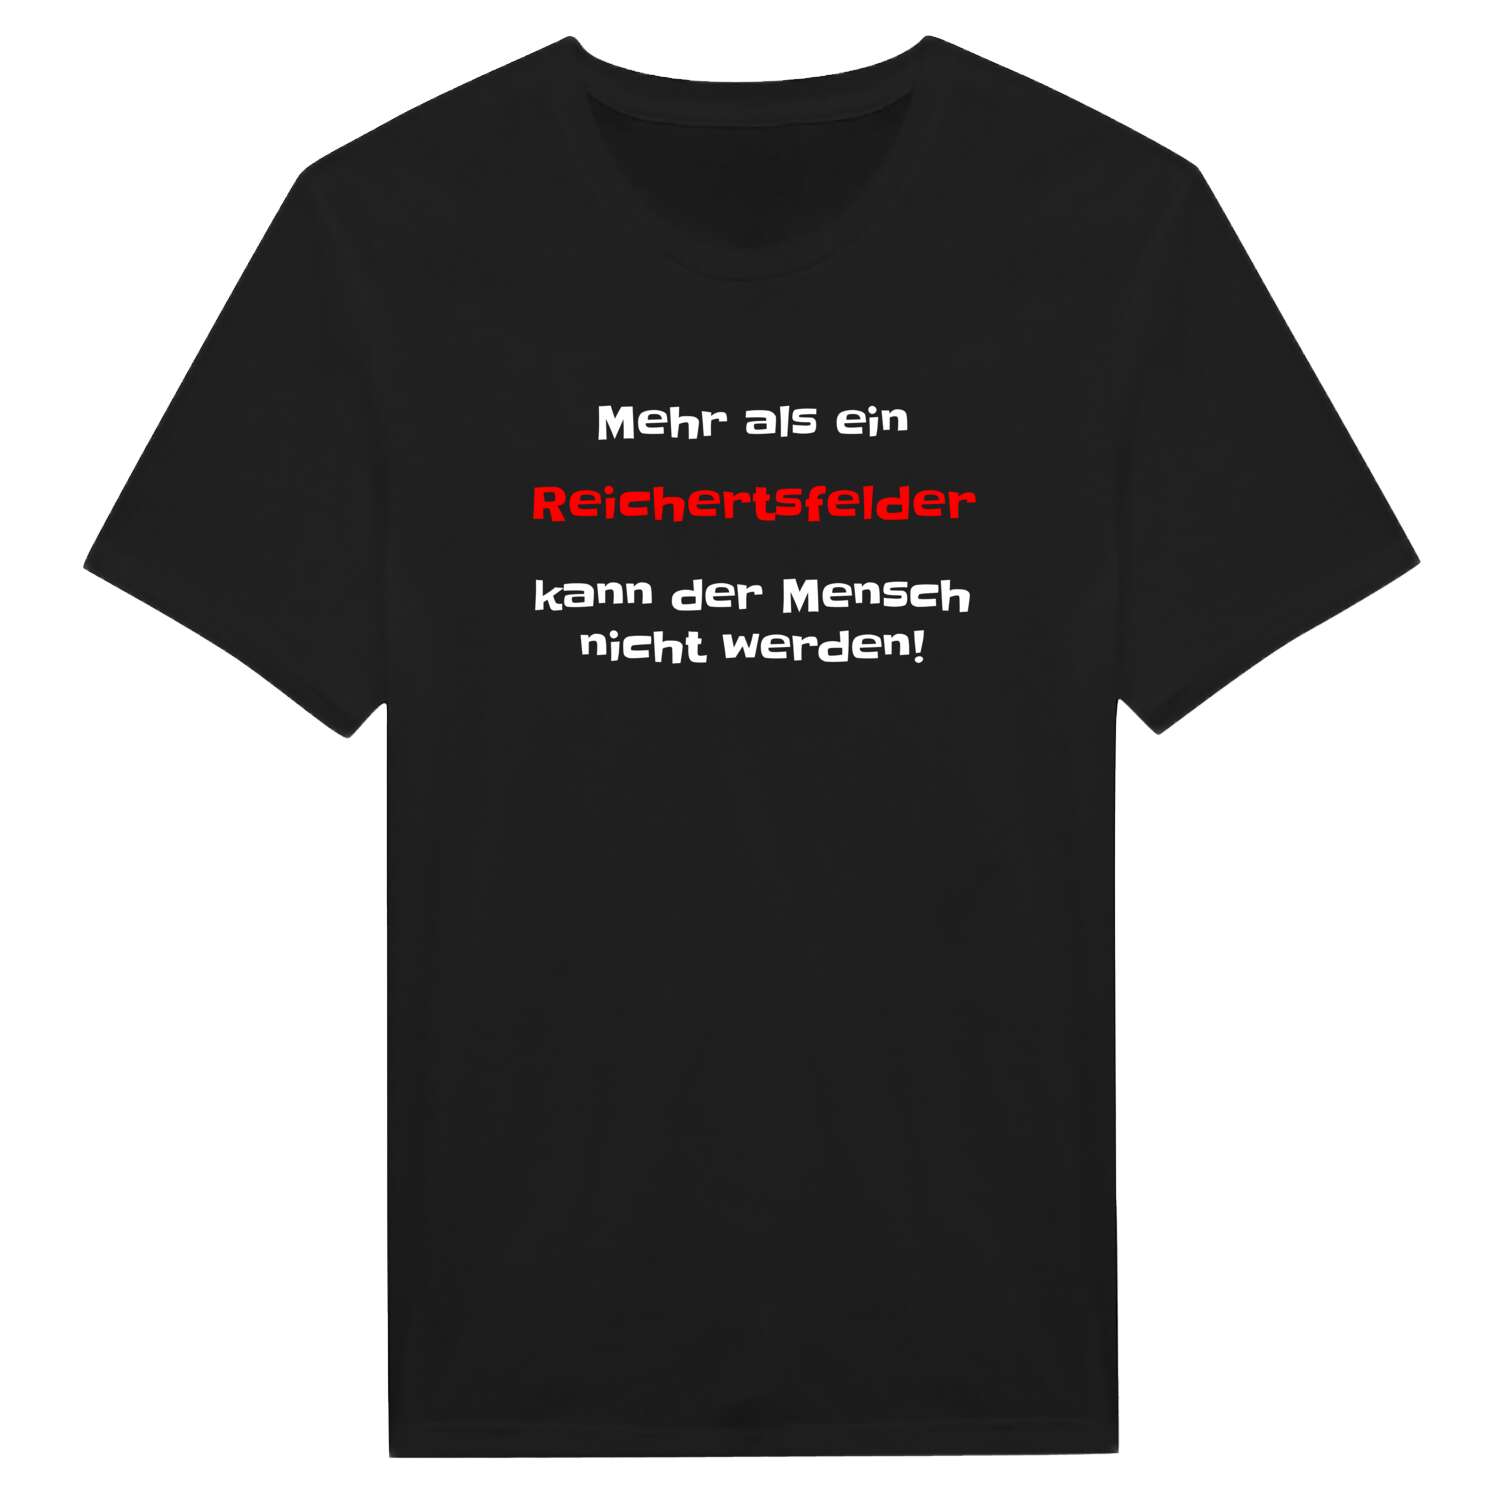 Reichertsfeld T-Shirt »Mehr als ein«